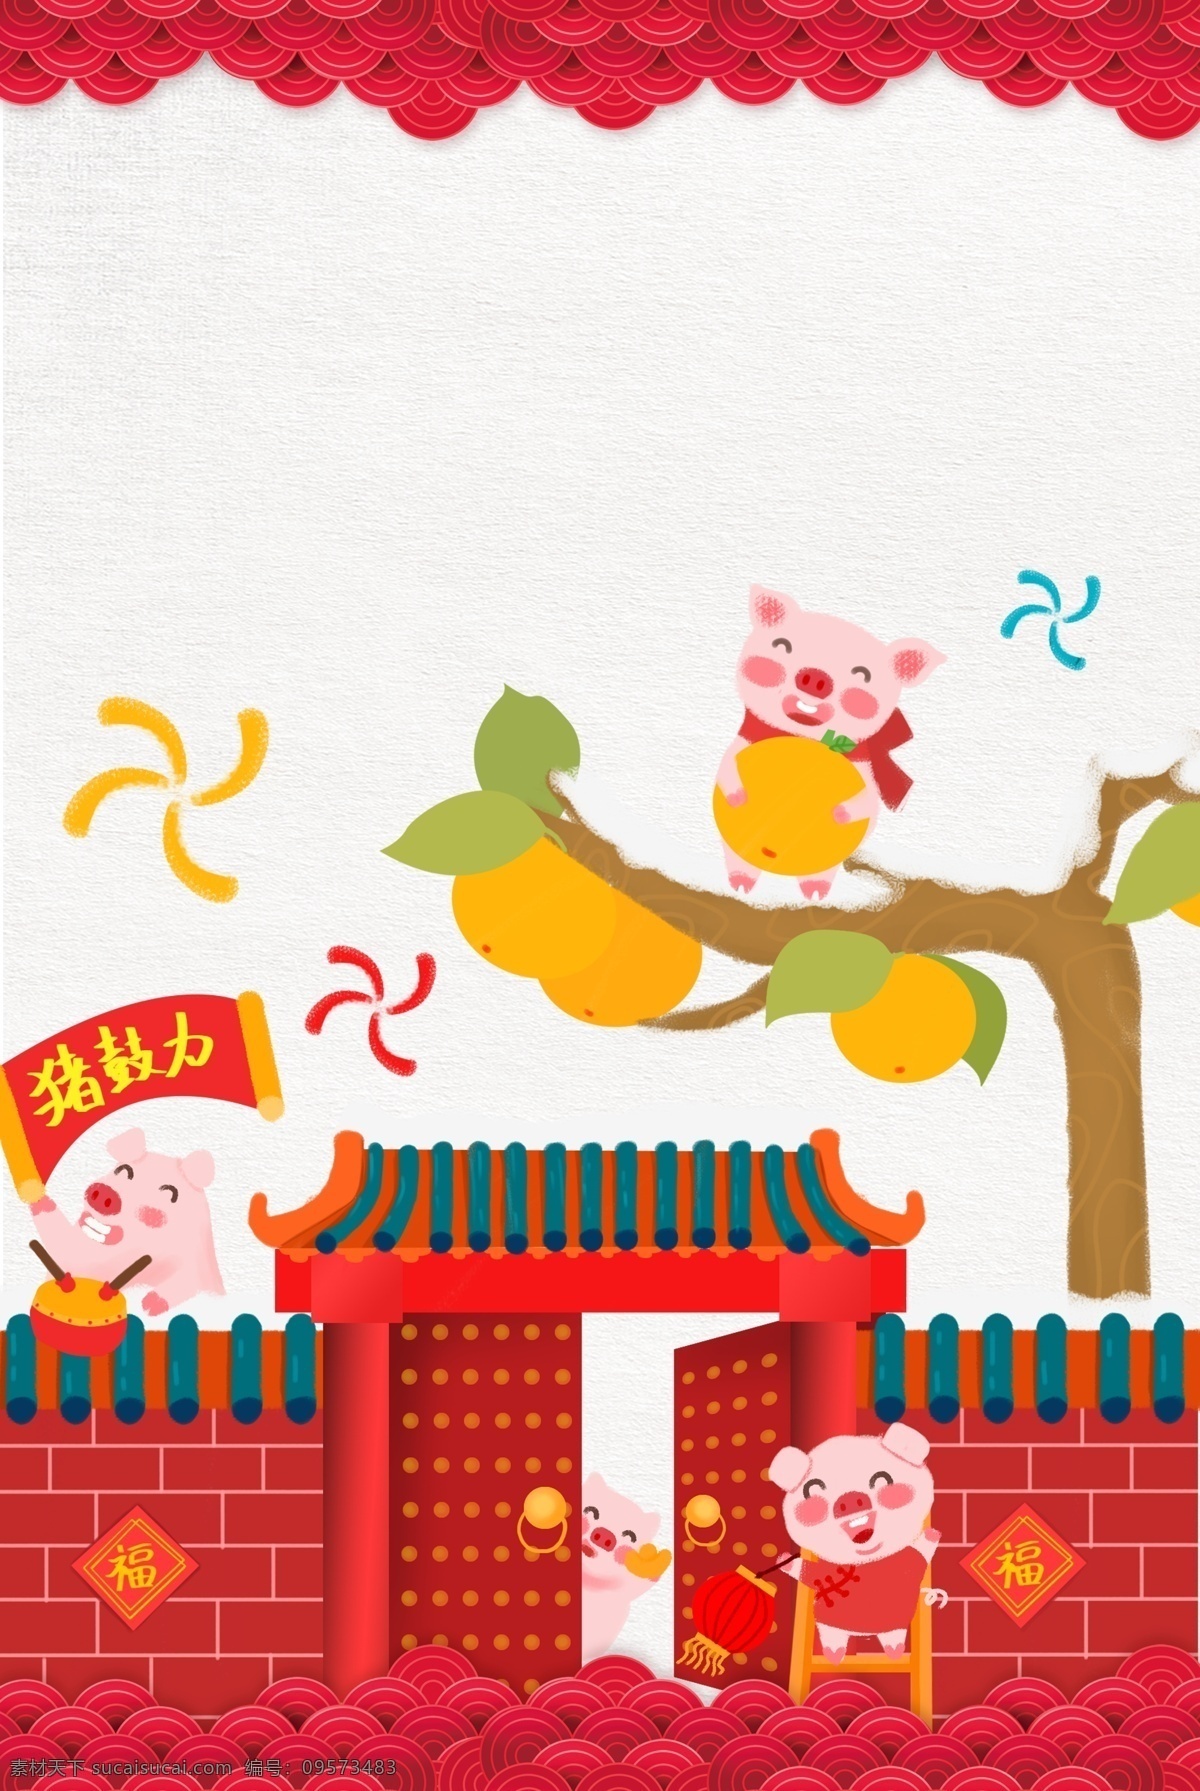 春节 卡通 手绘 庆祝 新年 海报 古代 建筑房子 可爱的小猪 敲鼓的小猪 大吉大利 元宝